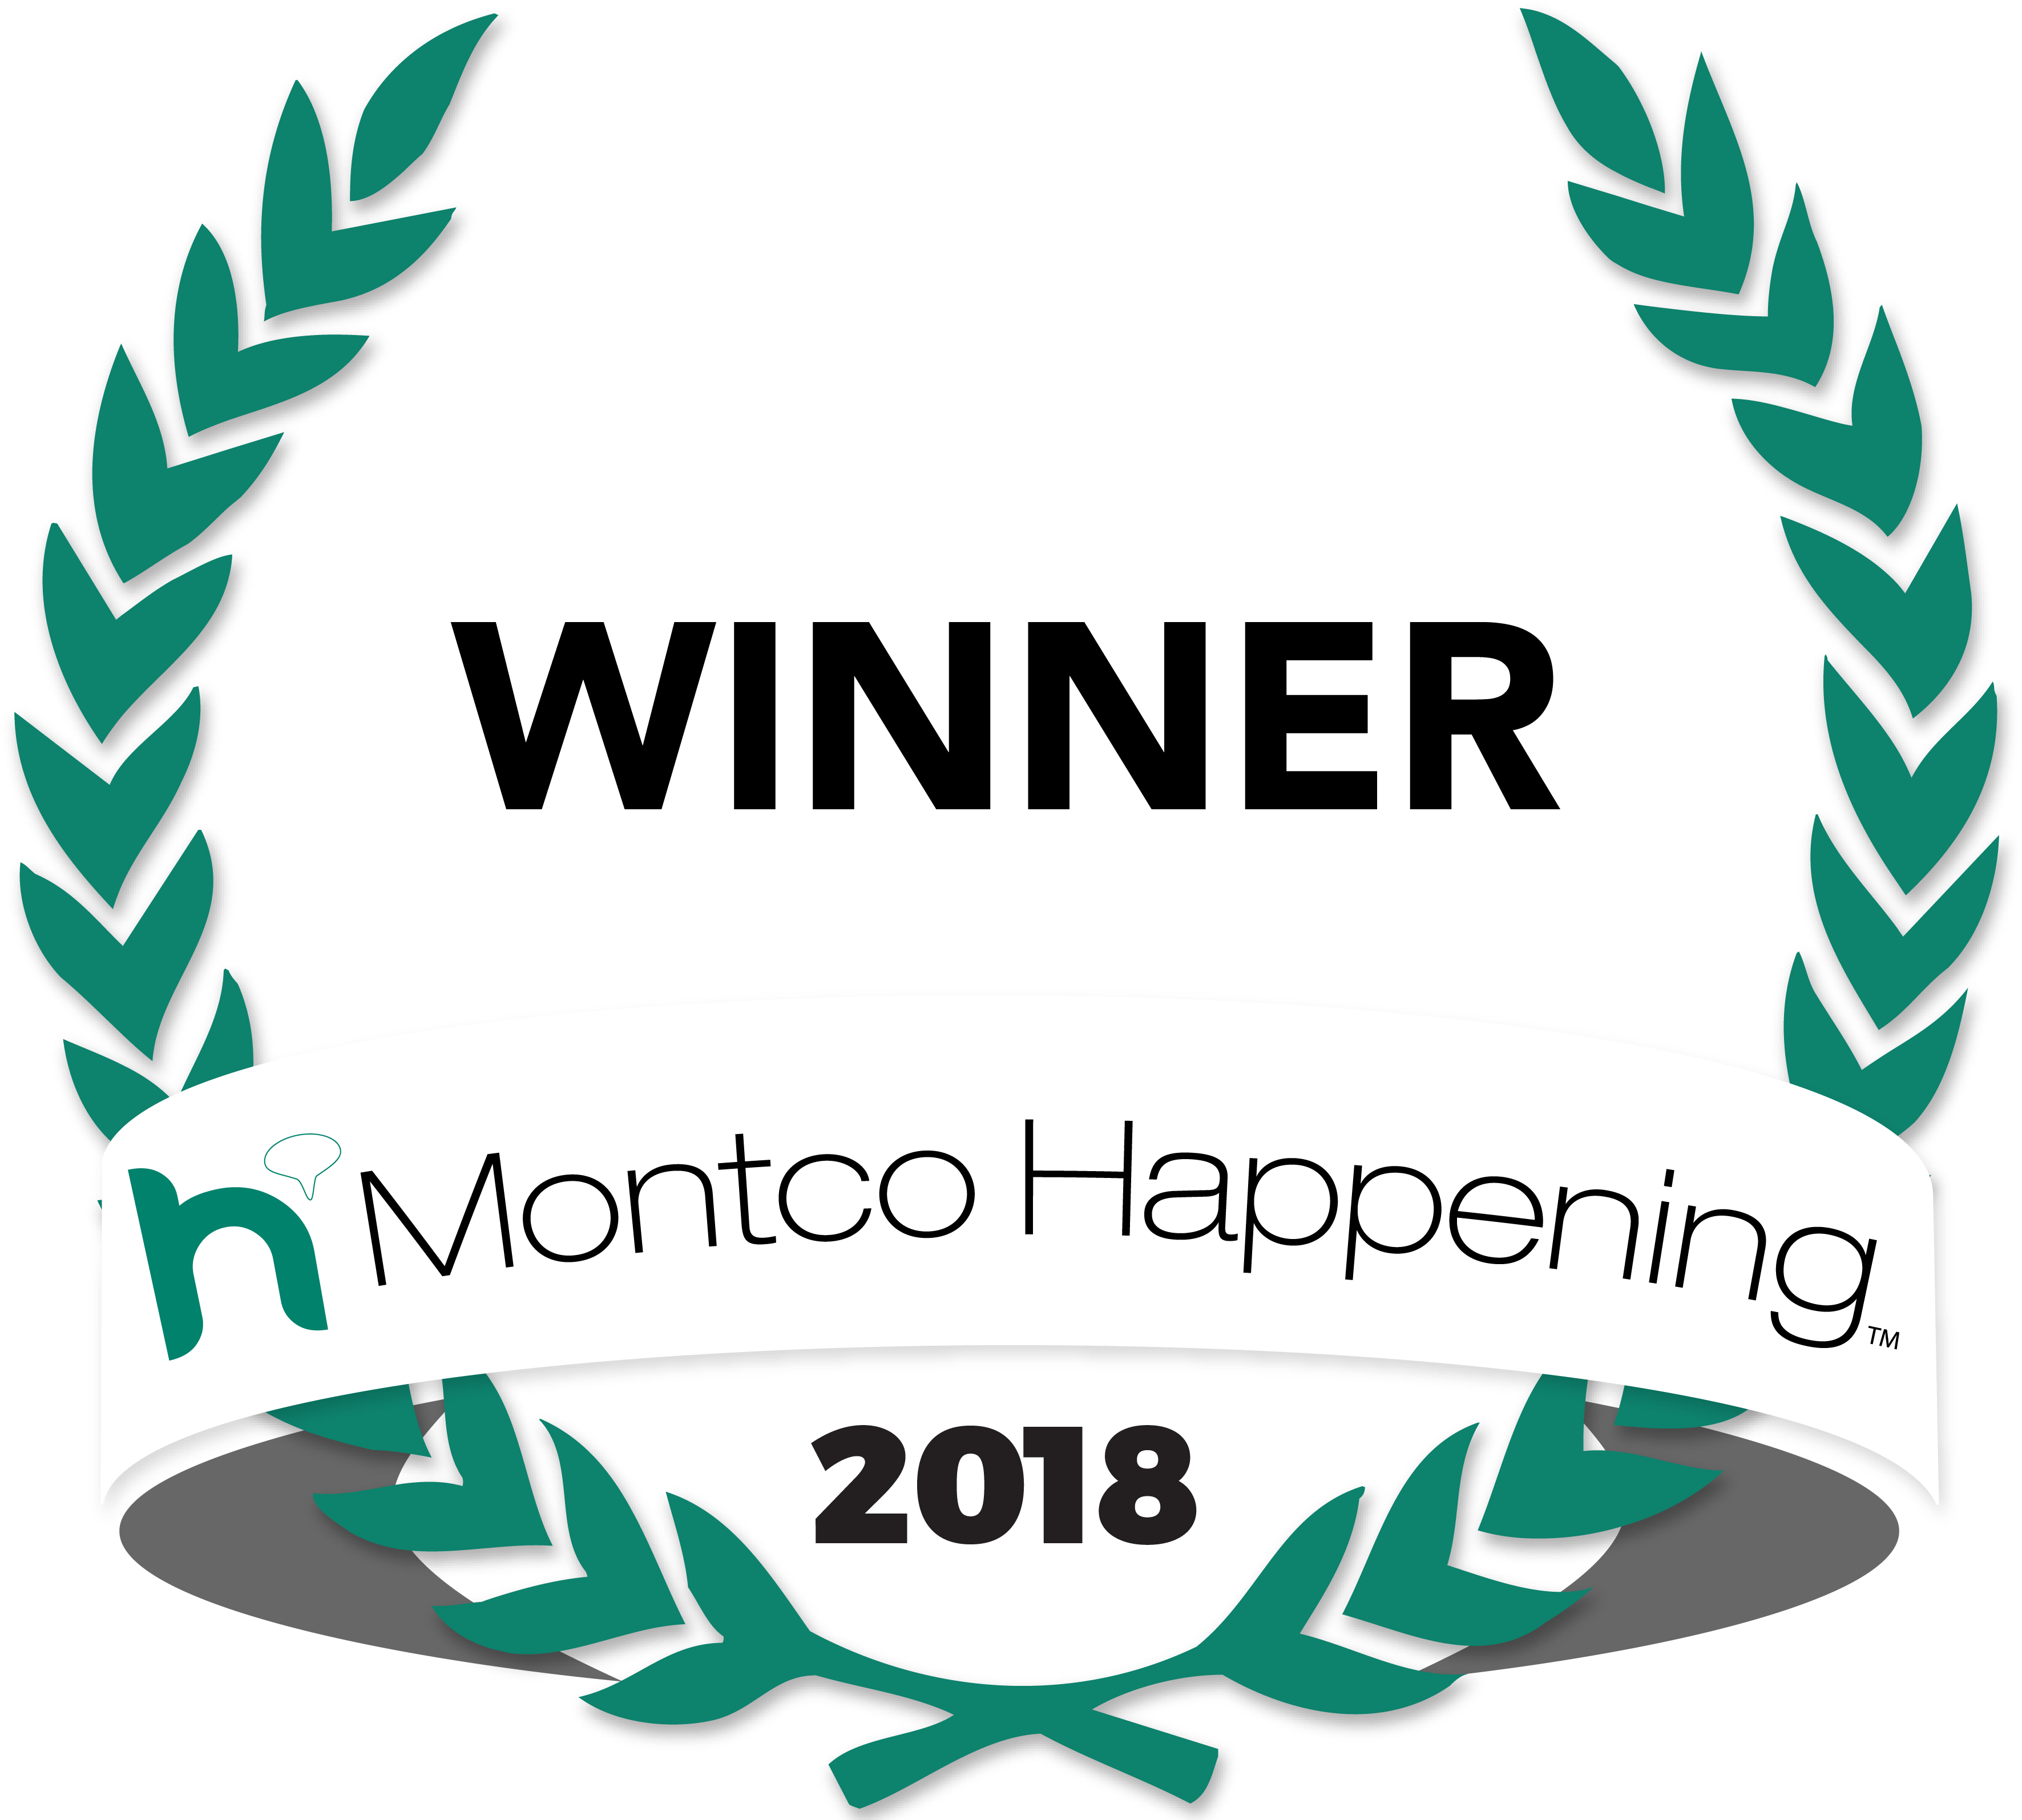 Montco Happening Hl Badge 2018 Winner - Montco Happening 2018 Winner Logo (4157x3196), Png Download